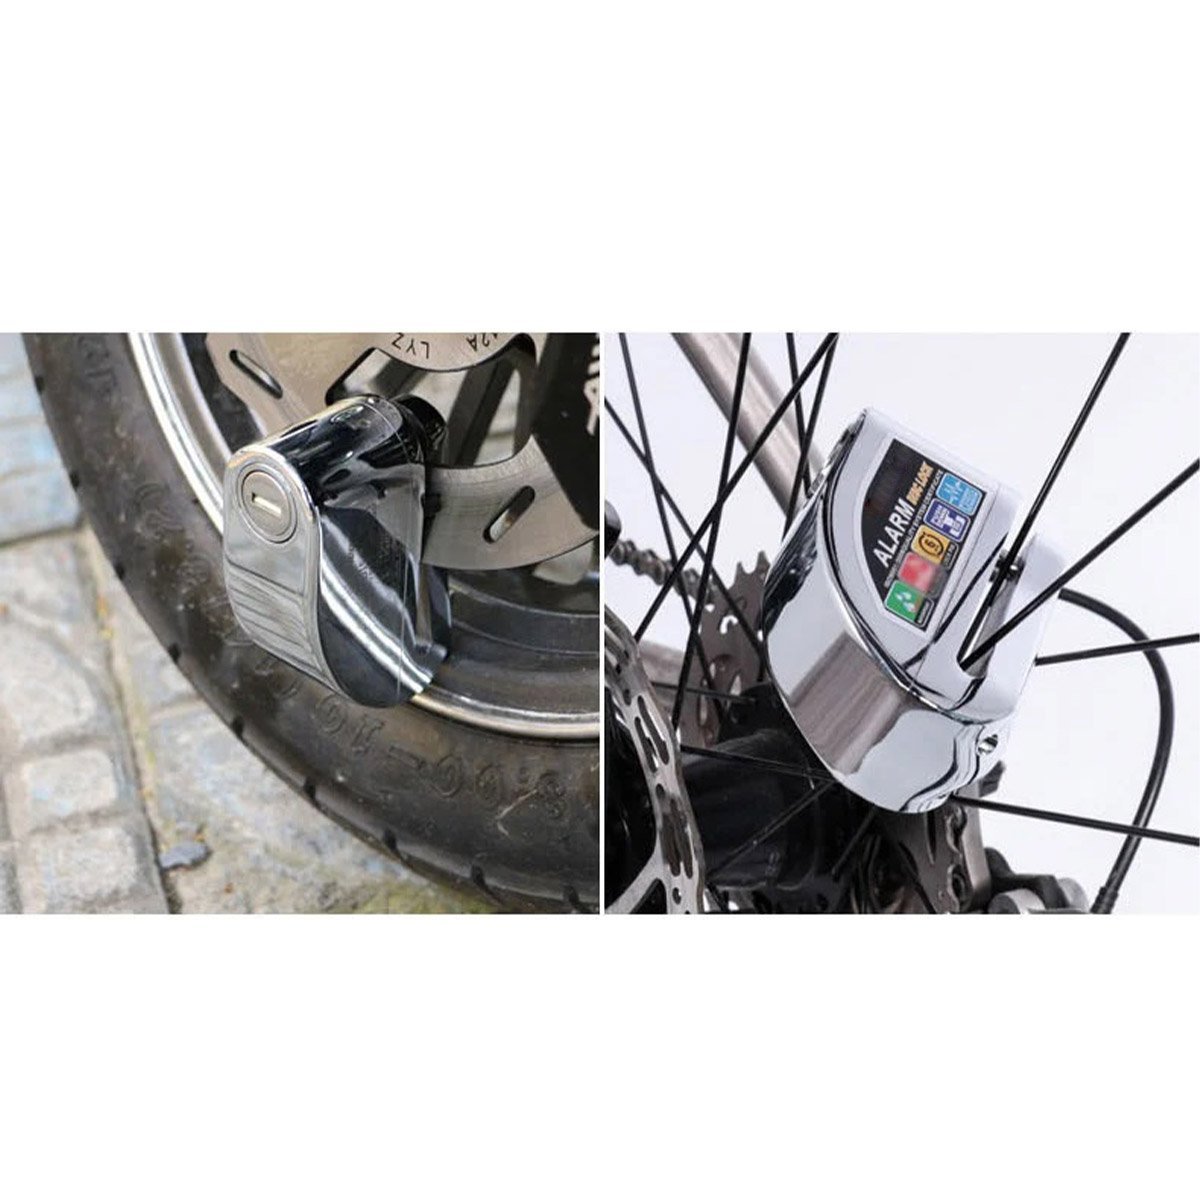 Trava de Disco Freio Moto Cadeado Alarme Sensor Sonoro Anti Furto Roubo Motocicleta Bike Bicicleta P - 5